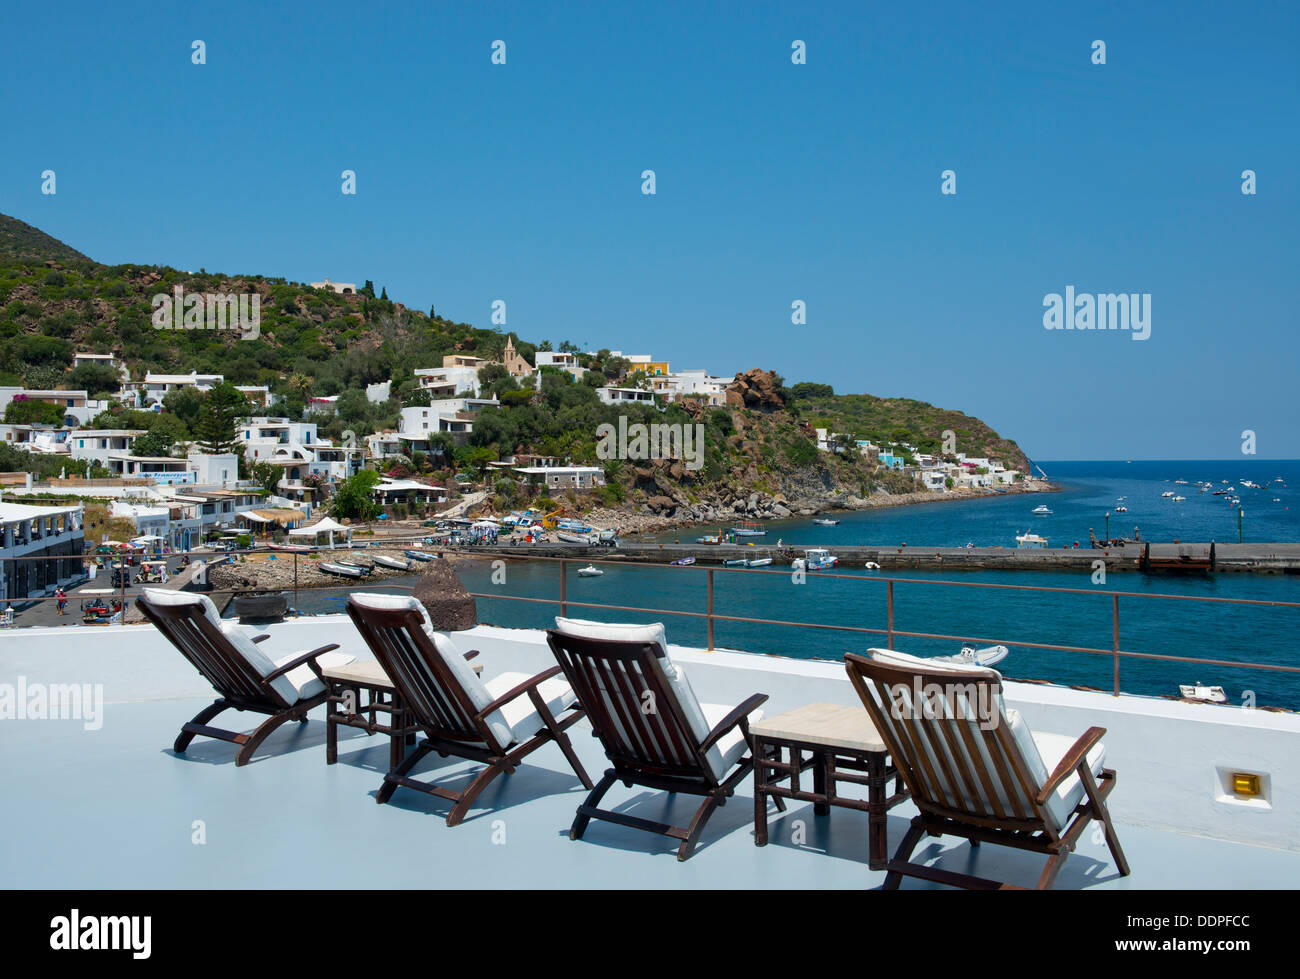 Sedie a sdraio con vista su San Pietro sull isola di Panarea nelle Isole Eolie, Messina, Sicilia, Italia Foto Stock